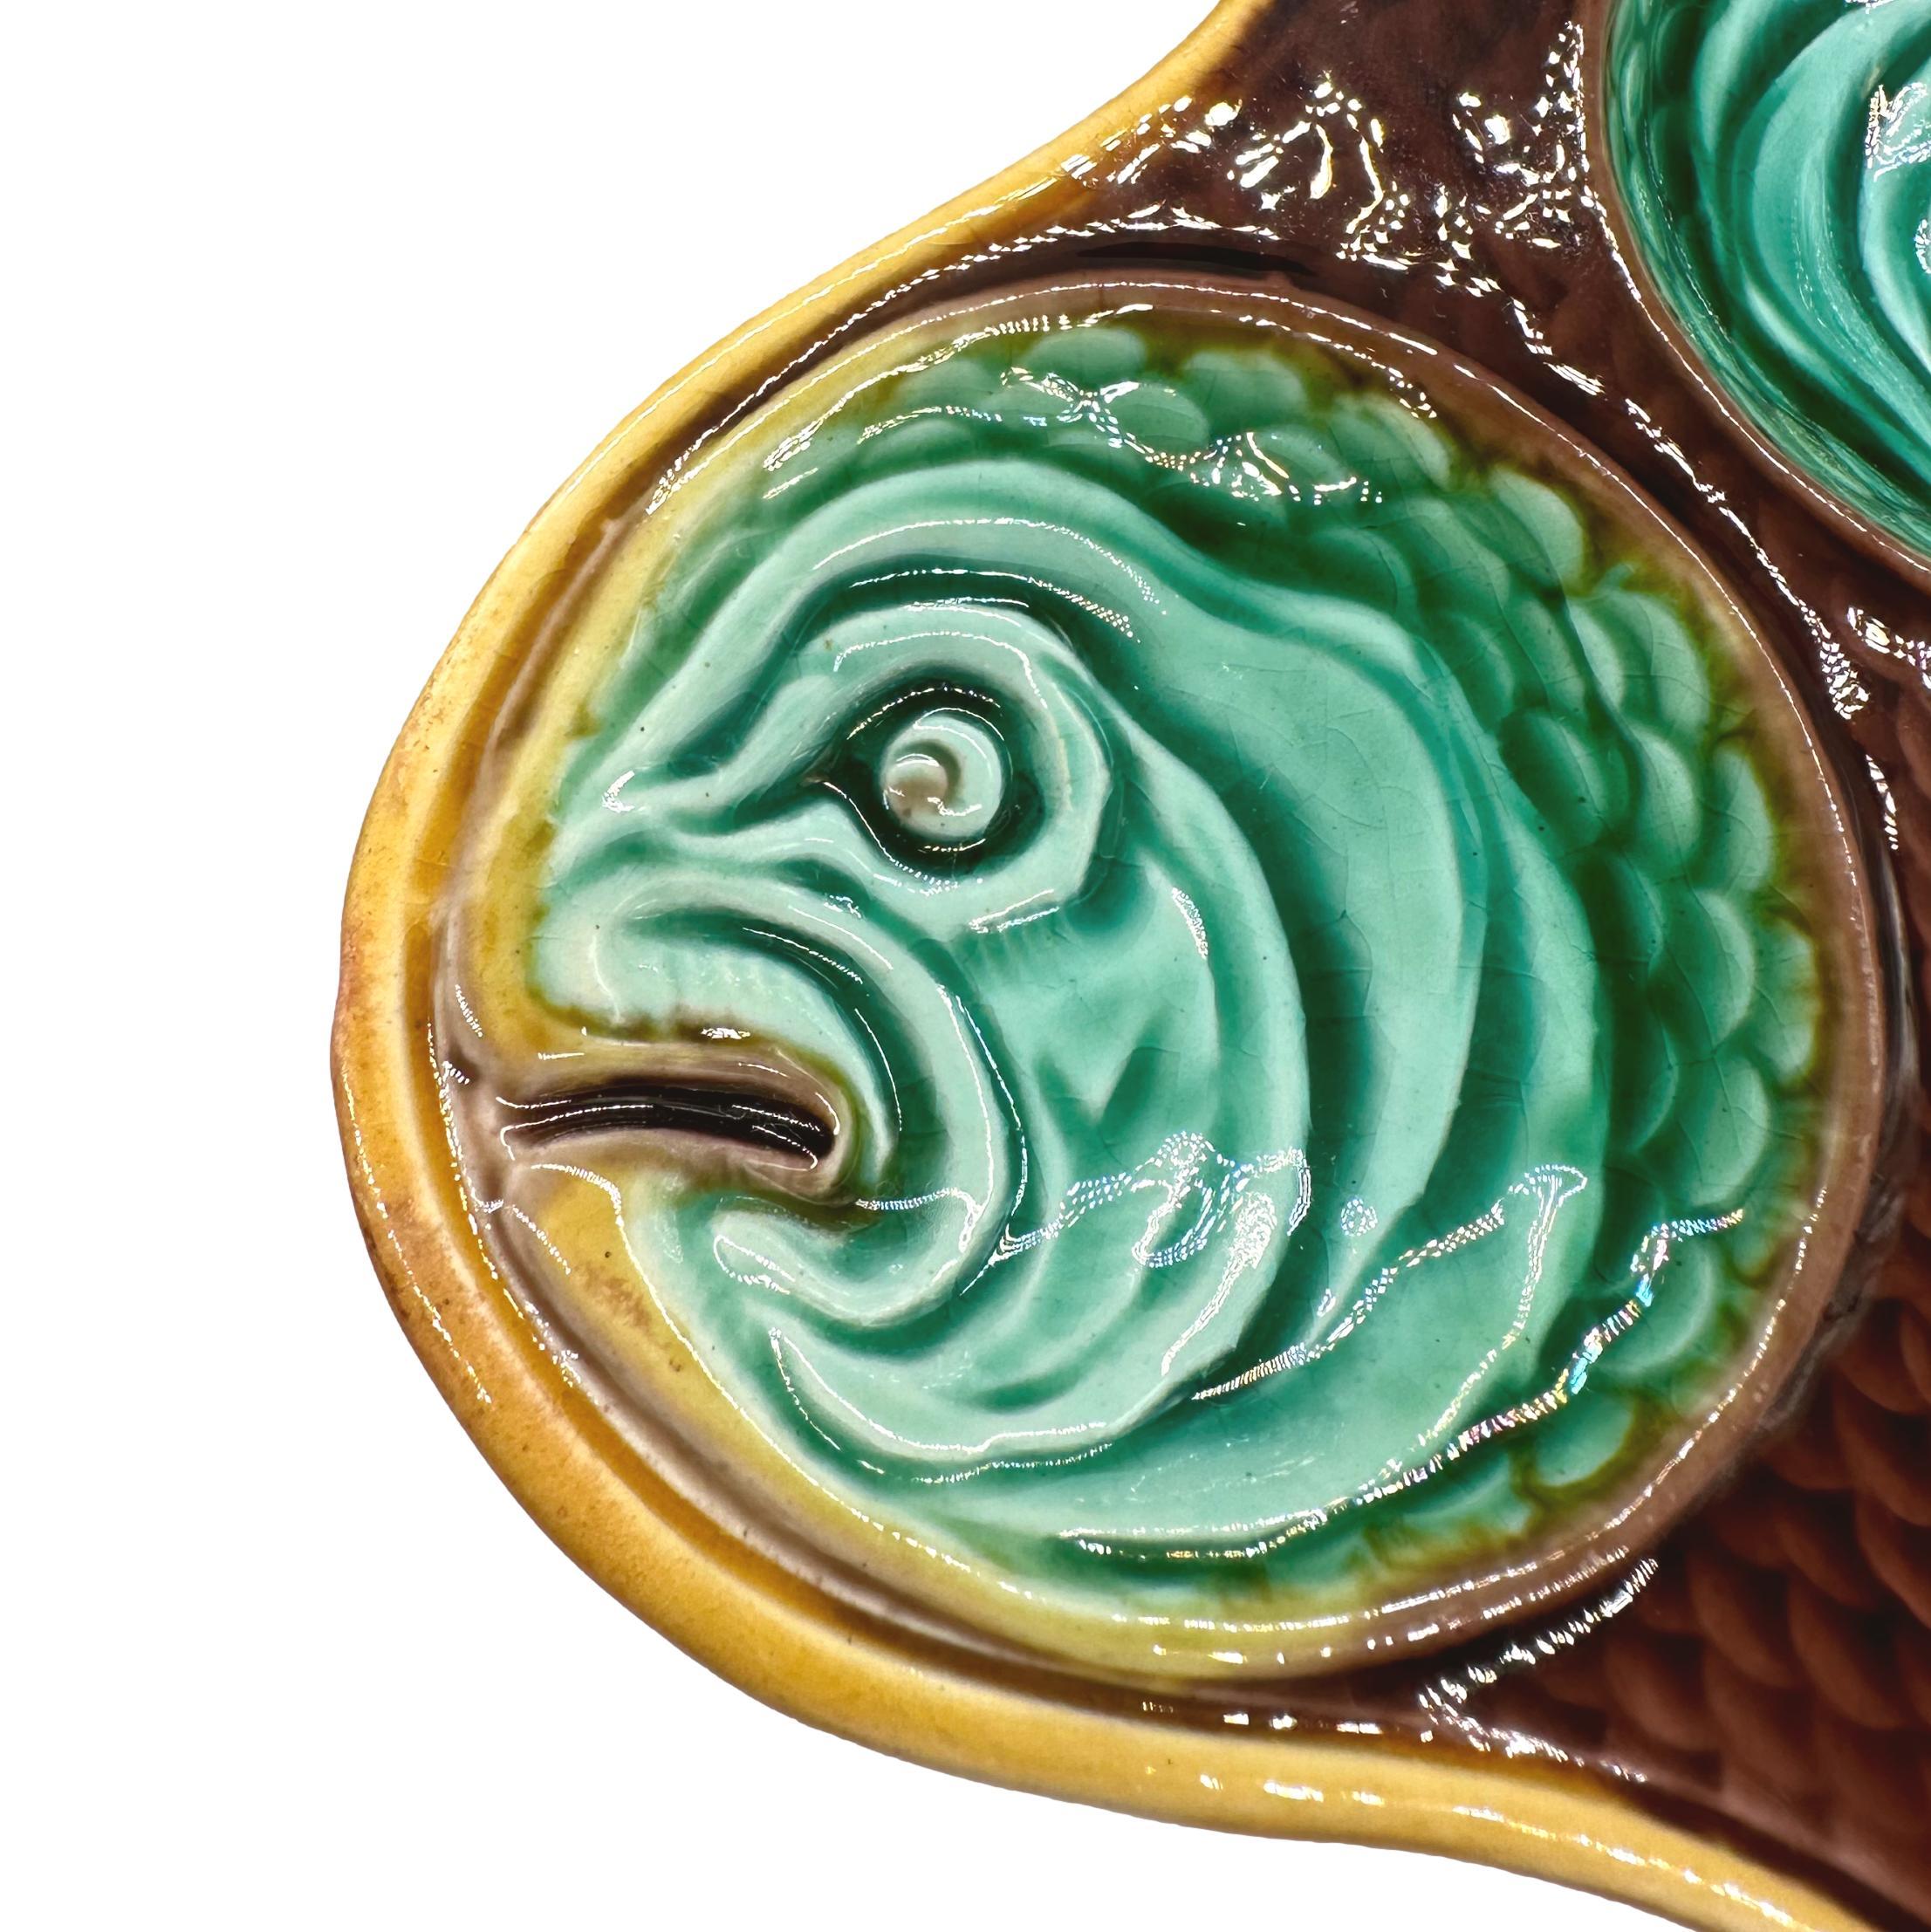 Großer Wedgwood Majolika Austern- oder Muschelserver mit zwölf fischkopfförmigen Vertiefungen, grün glasiert, mit zentraler Tauchvertiefung, rückseitig mit eingeprägter Marke 